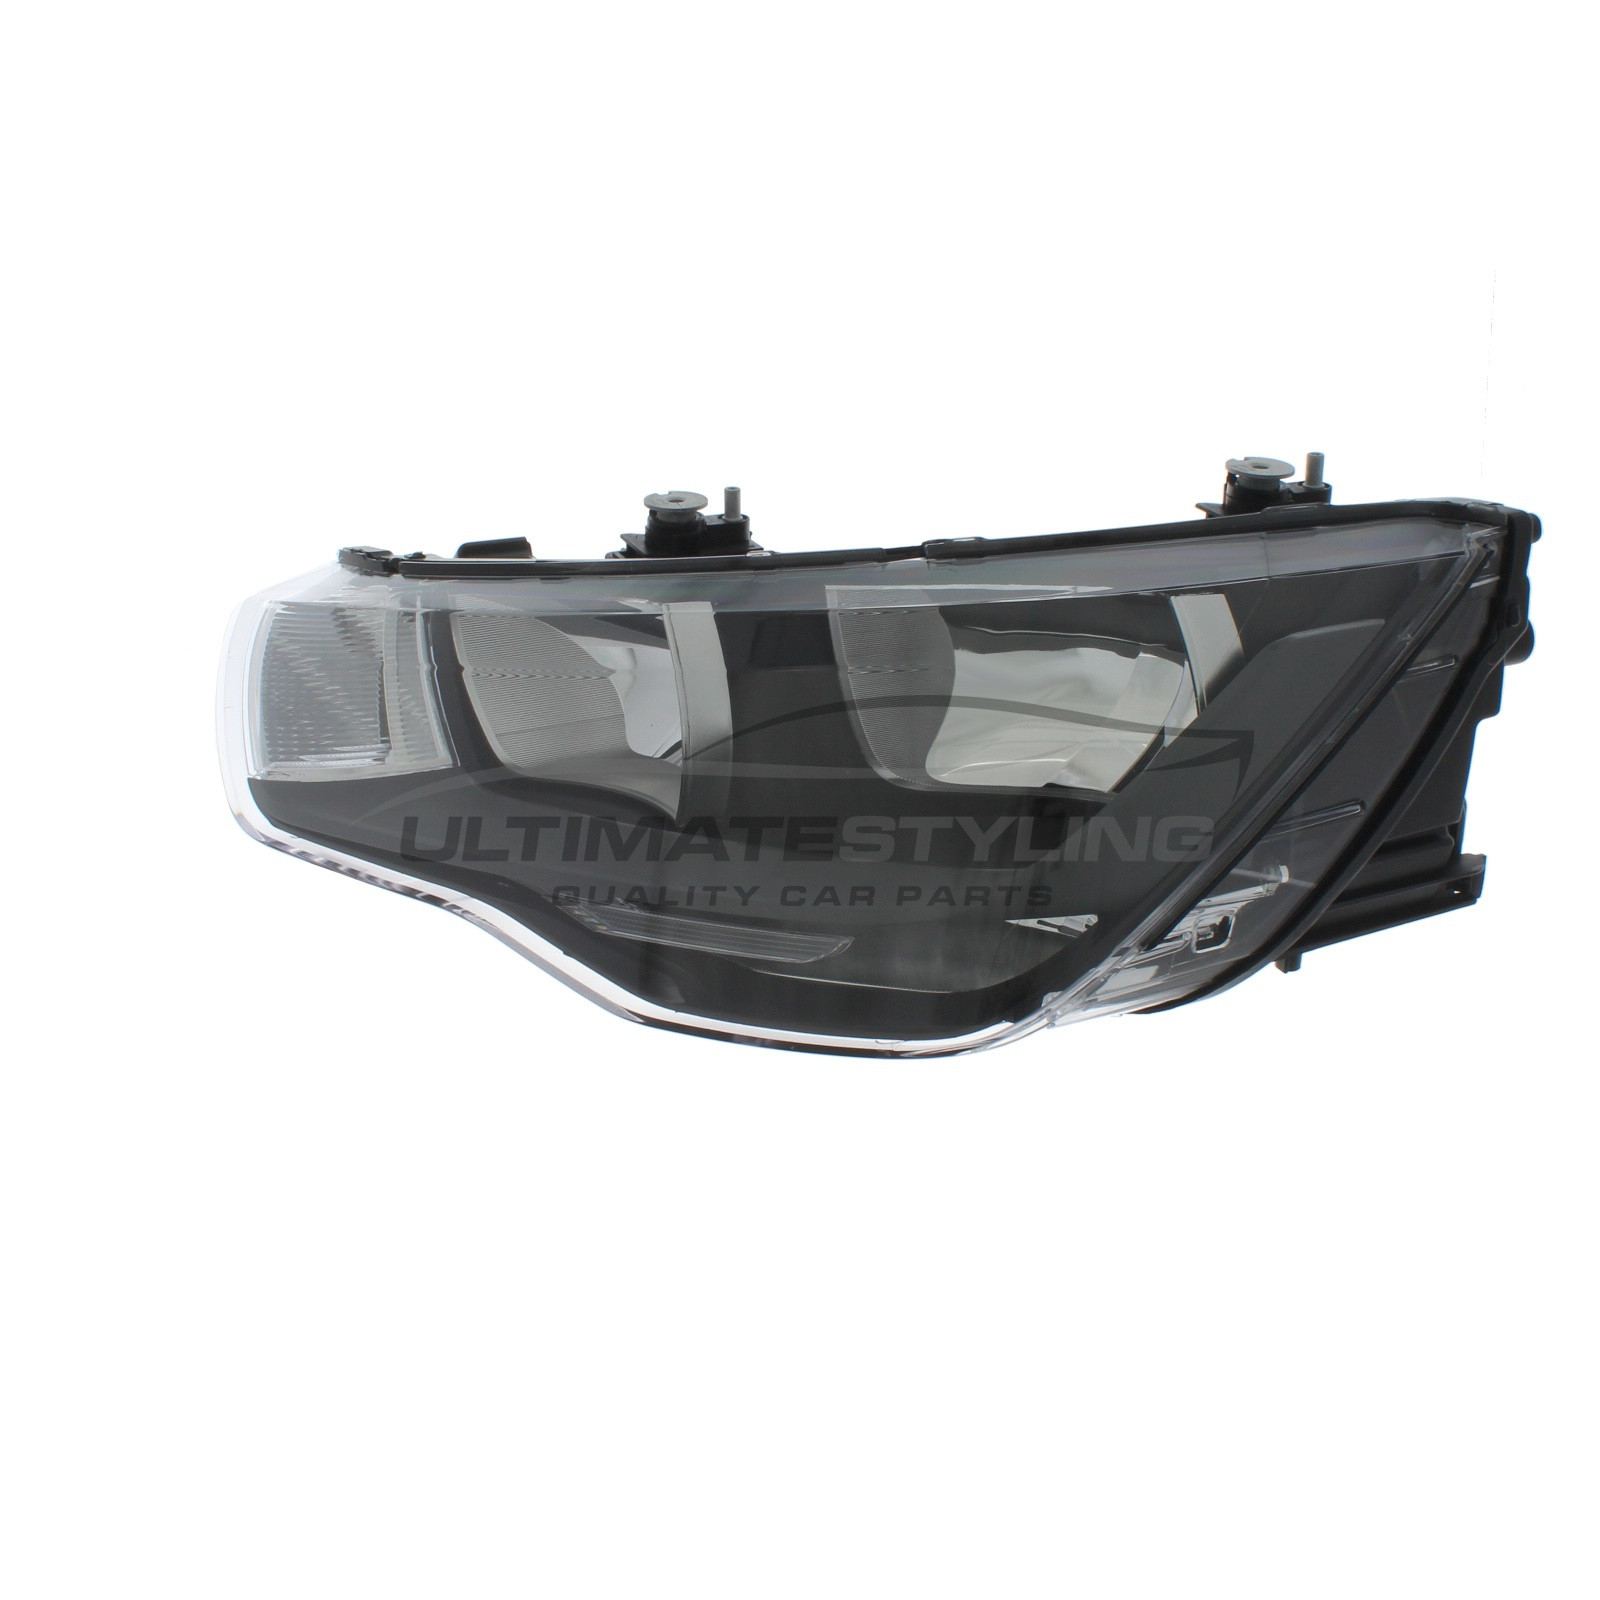 Audi A1 Headlight / Headlamp - Passenger Side (LH) - Halogen